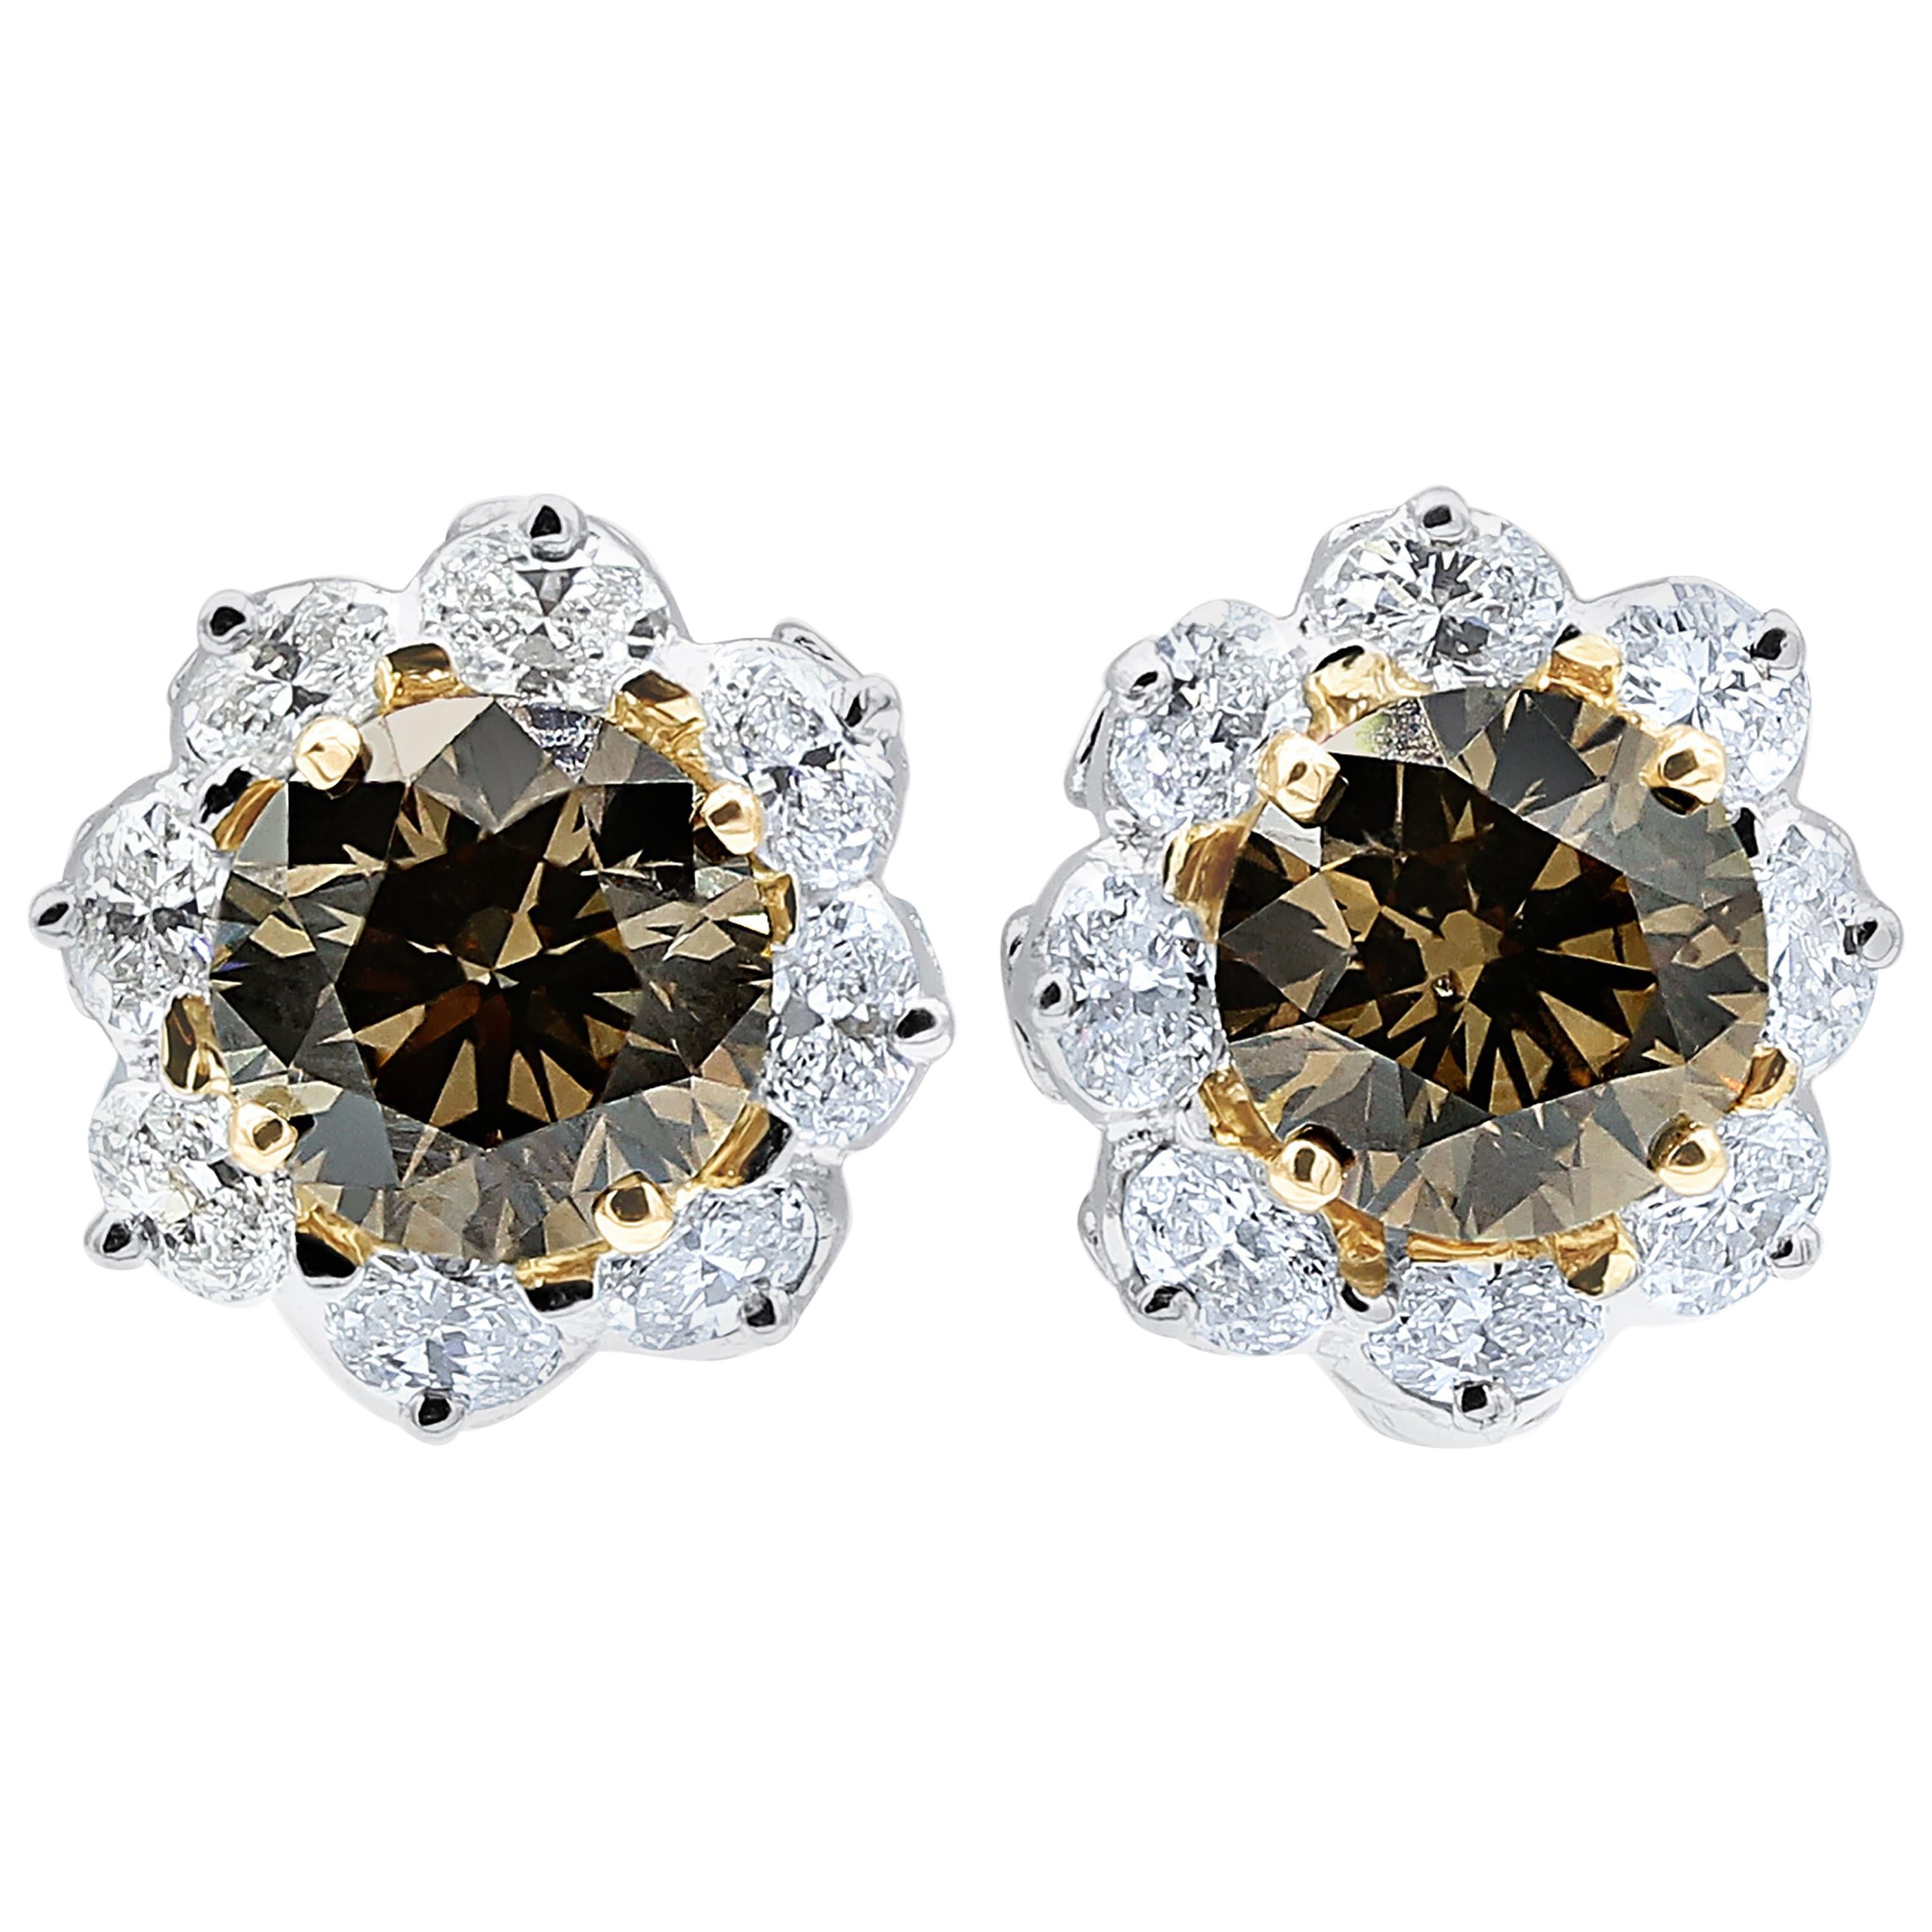 Oscar Heyman Cognac Diamond Clip Earrings